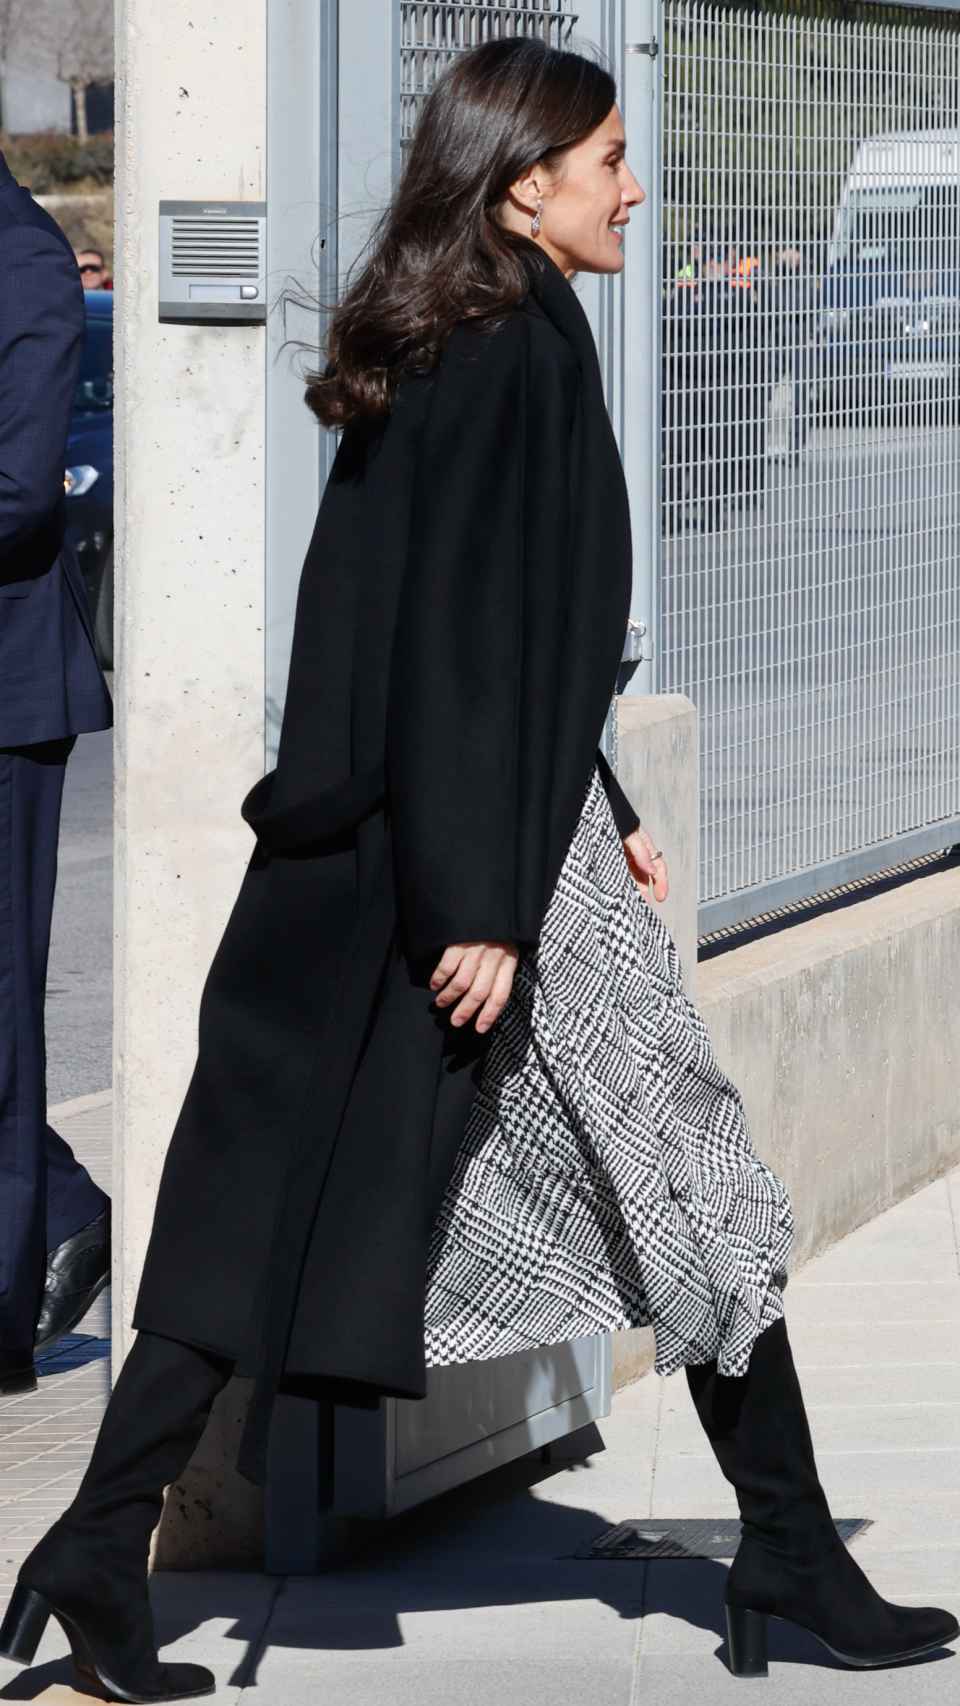 La reina Letizia ha llevado abrigo negro y botas calcetín.